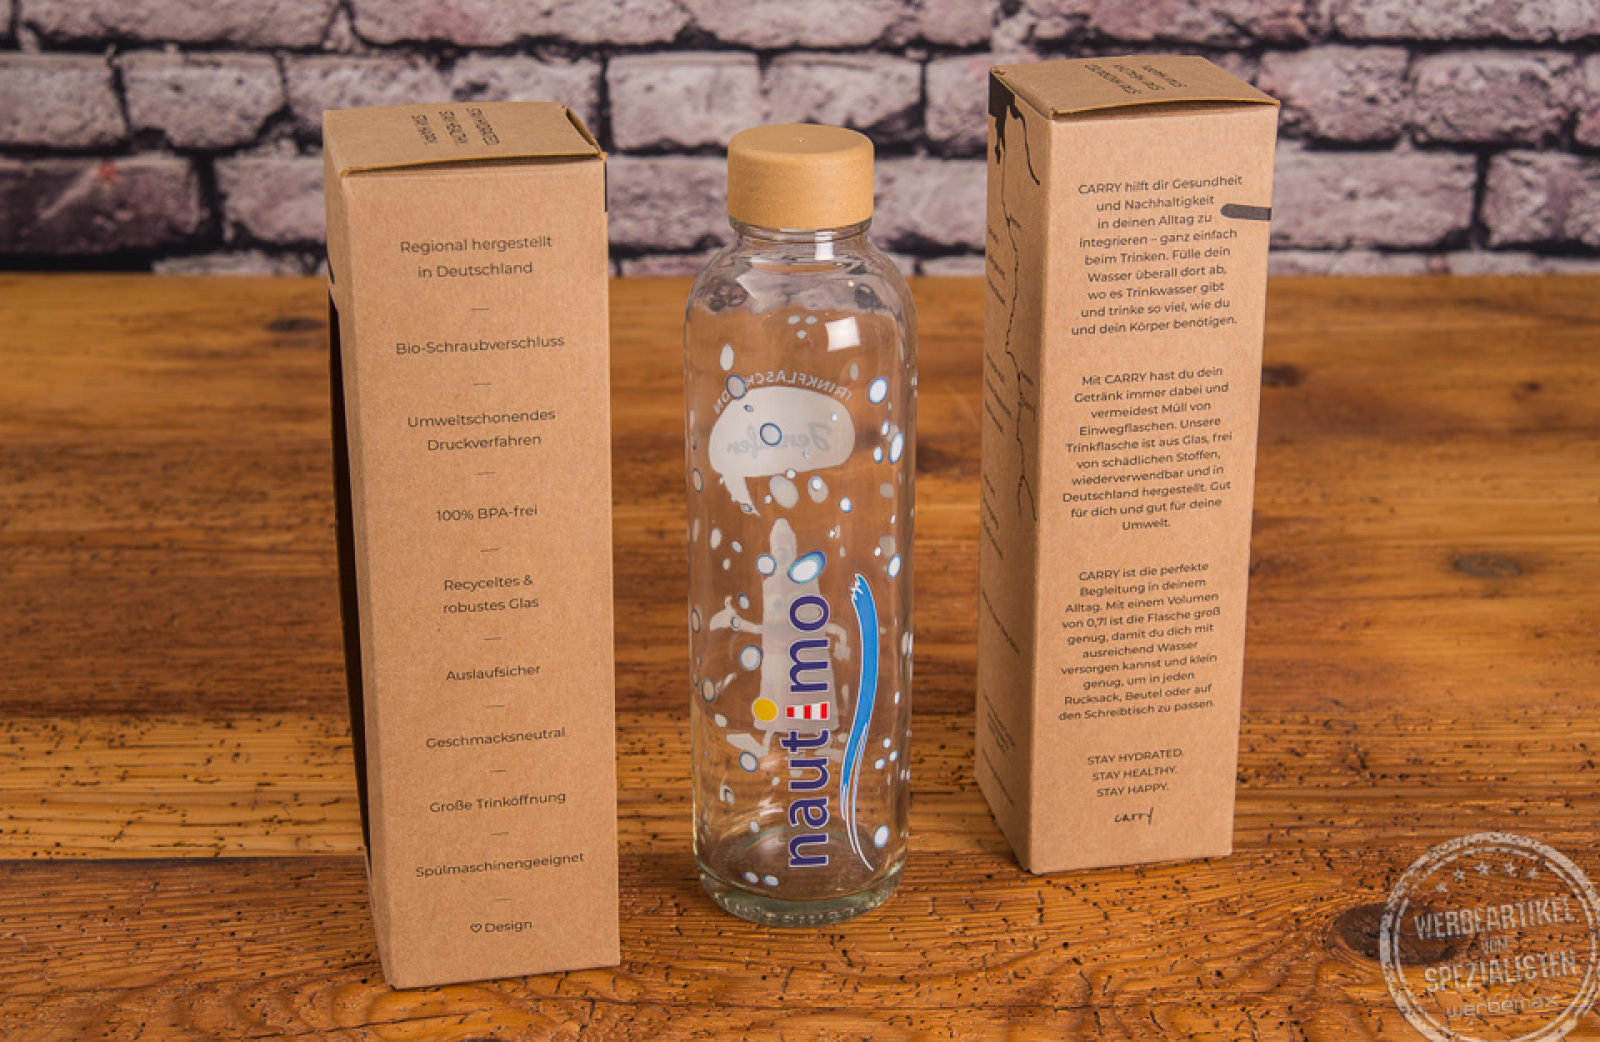 Bedruckte CARRY Bottle Glasflasche aus Recyclingglas in einer schönen Kartonverpackung